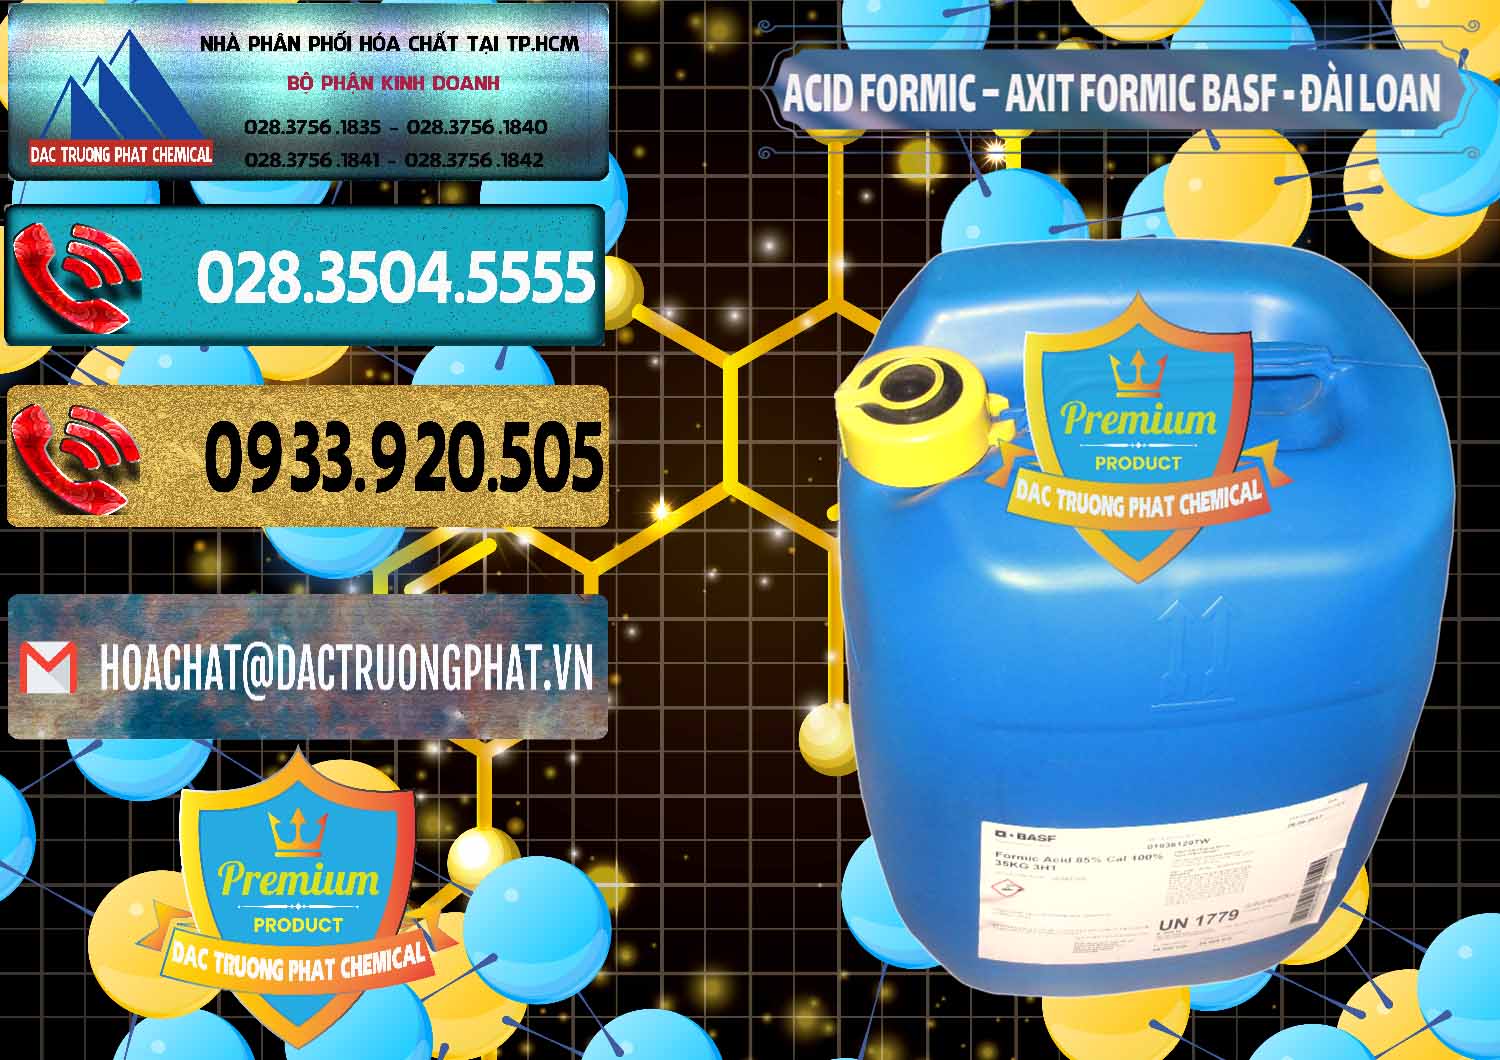 Bán & phân phối Acid Formic - Axit Formic 85% BASF Đài Loan Taiwan - 0027 - Kinh doanh & phân phối hóa chất tại TP.HCM - hoachatdetnhuom.com